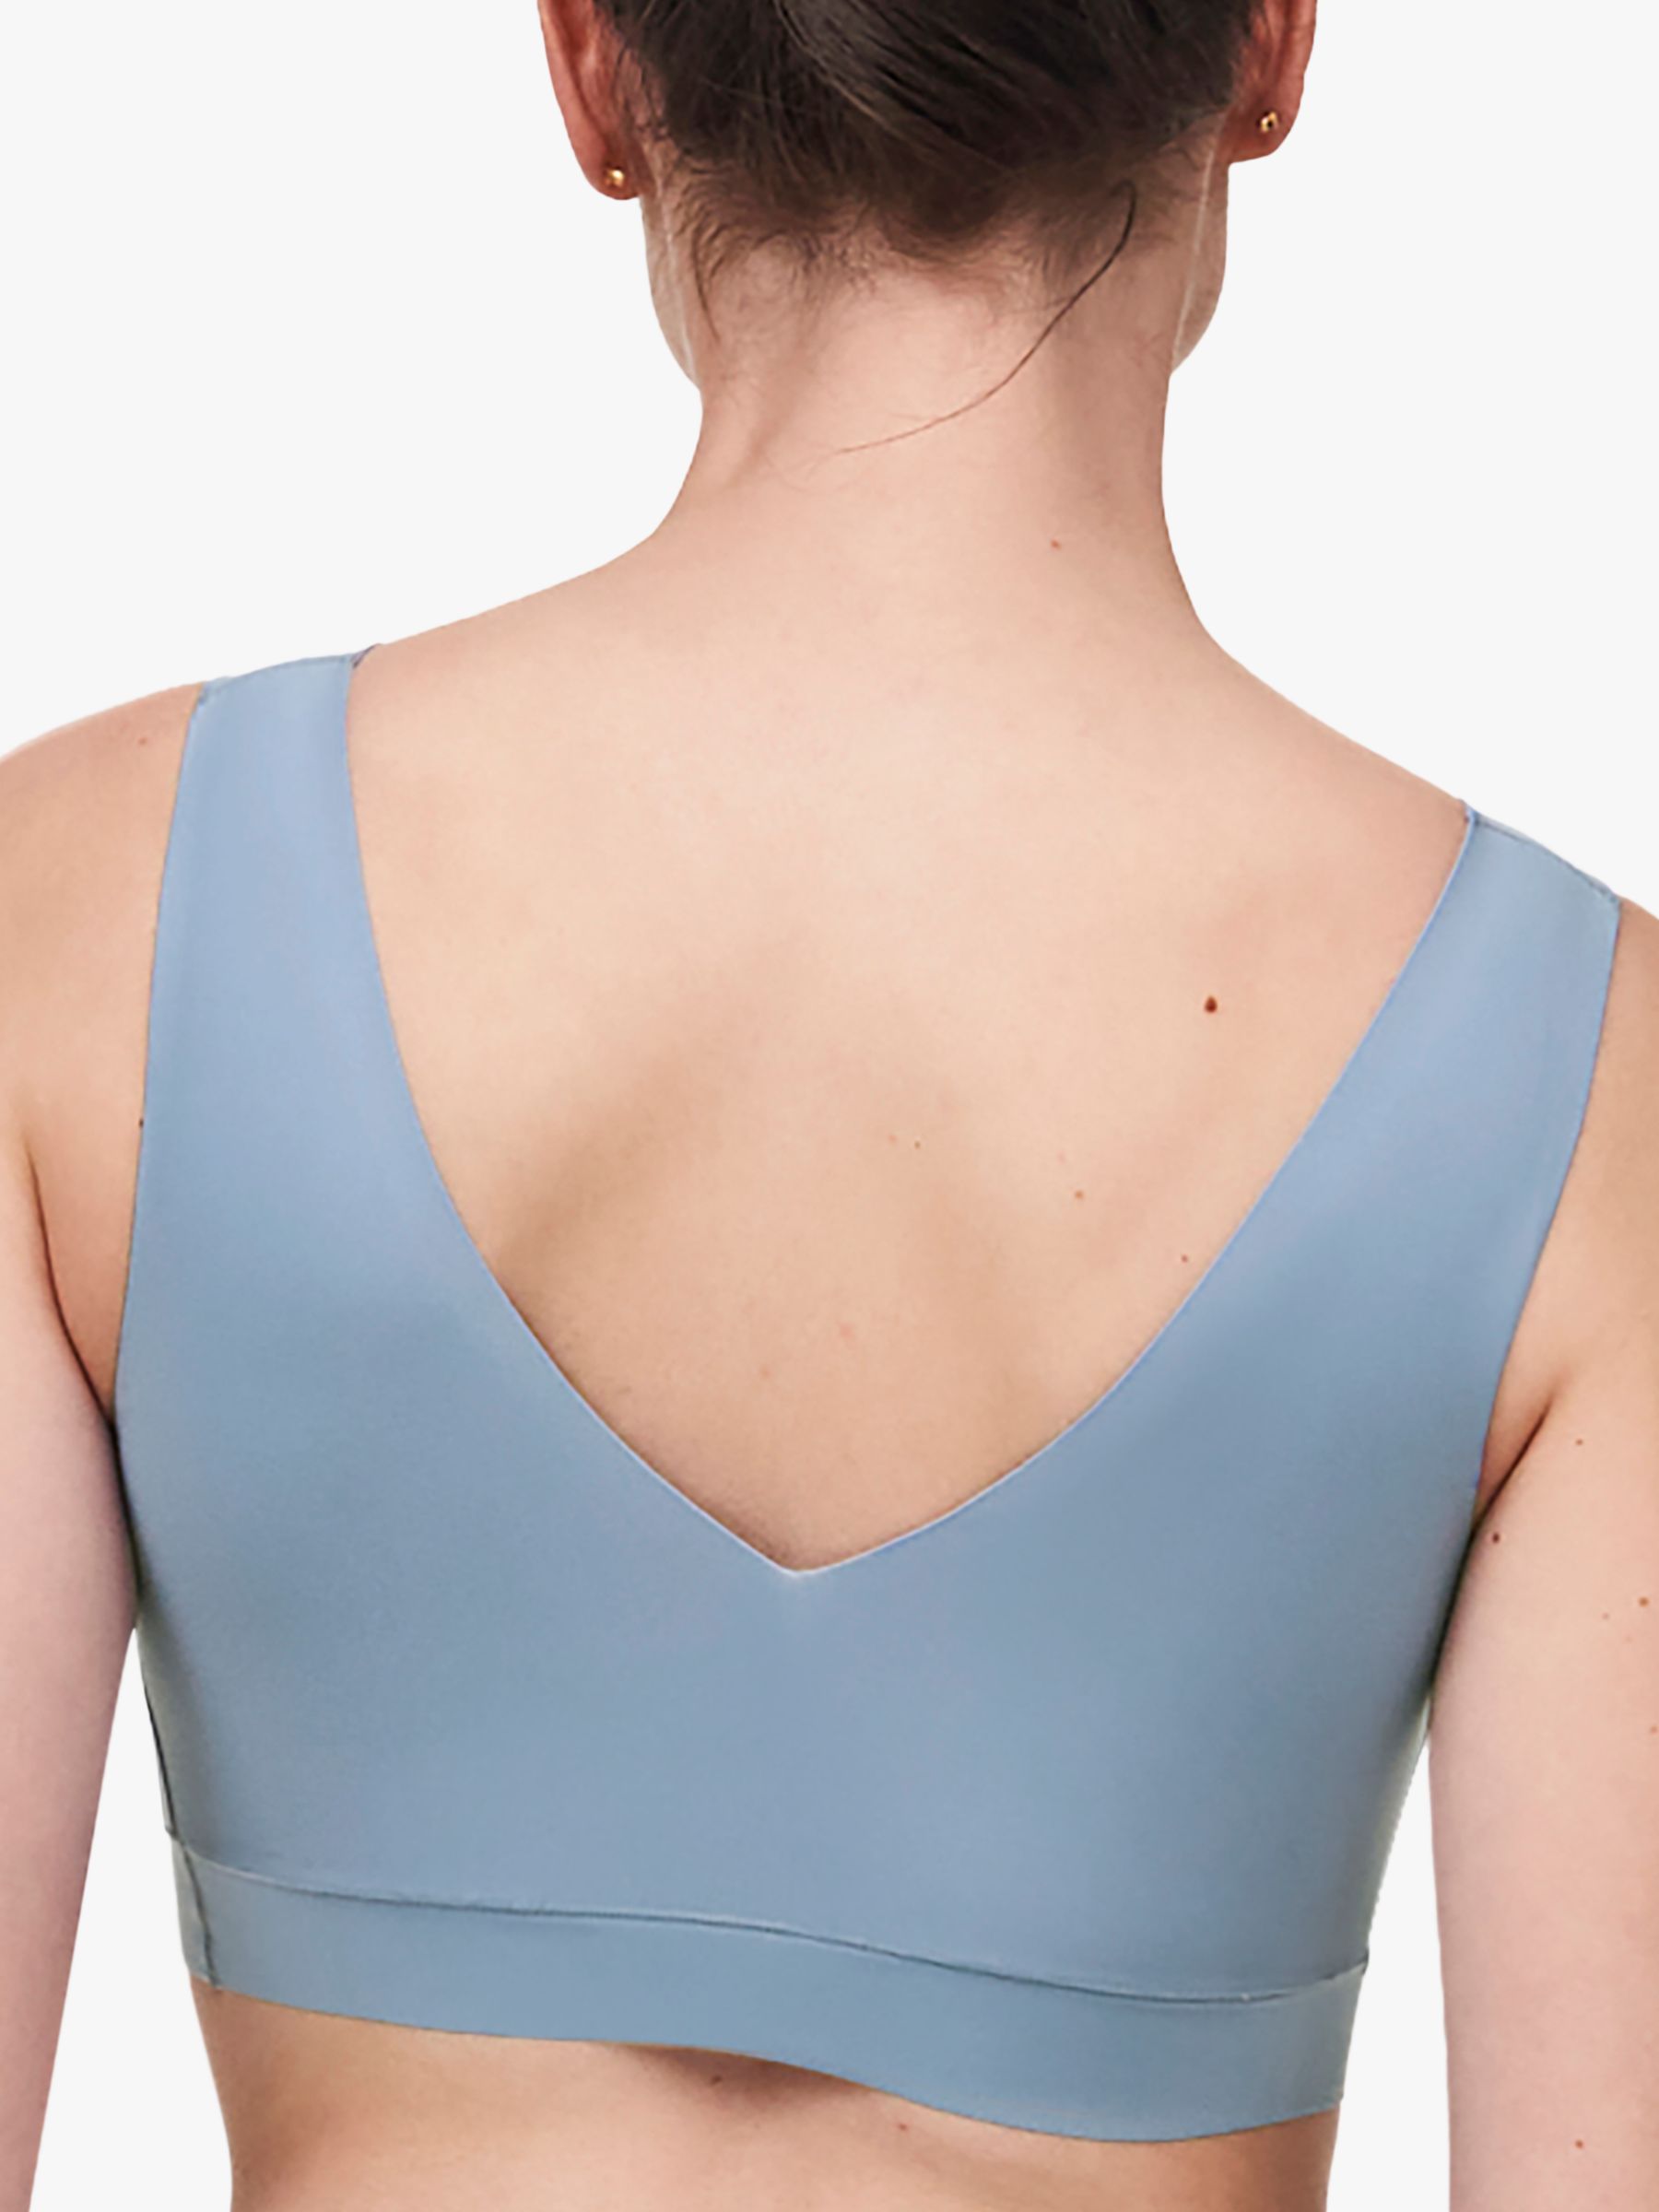 The $69 sports bra that's taking TikTok by storm